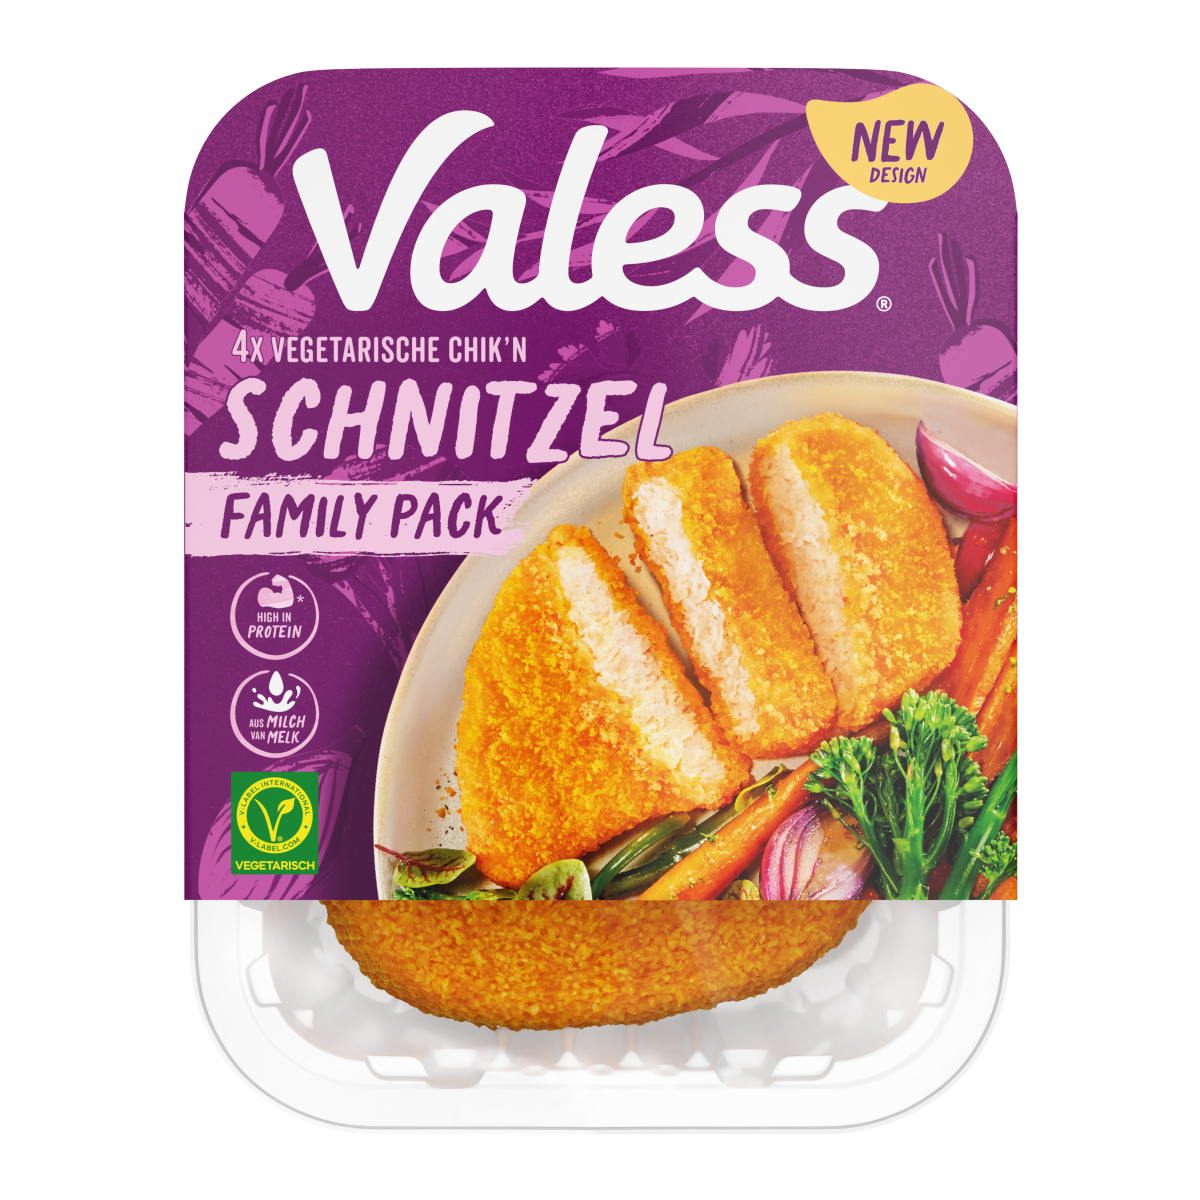 Vegetarsiche Chik'n Schnitzel Family Pack